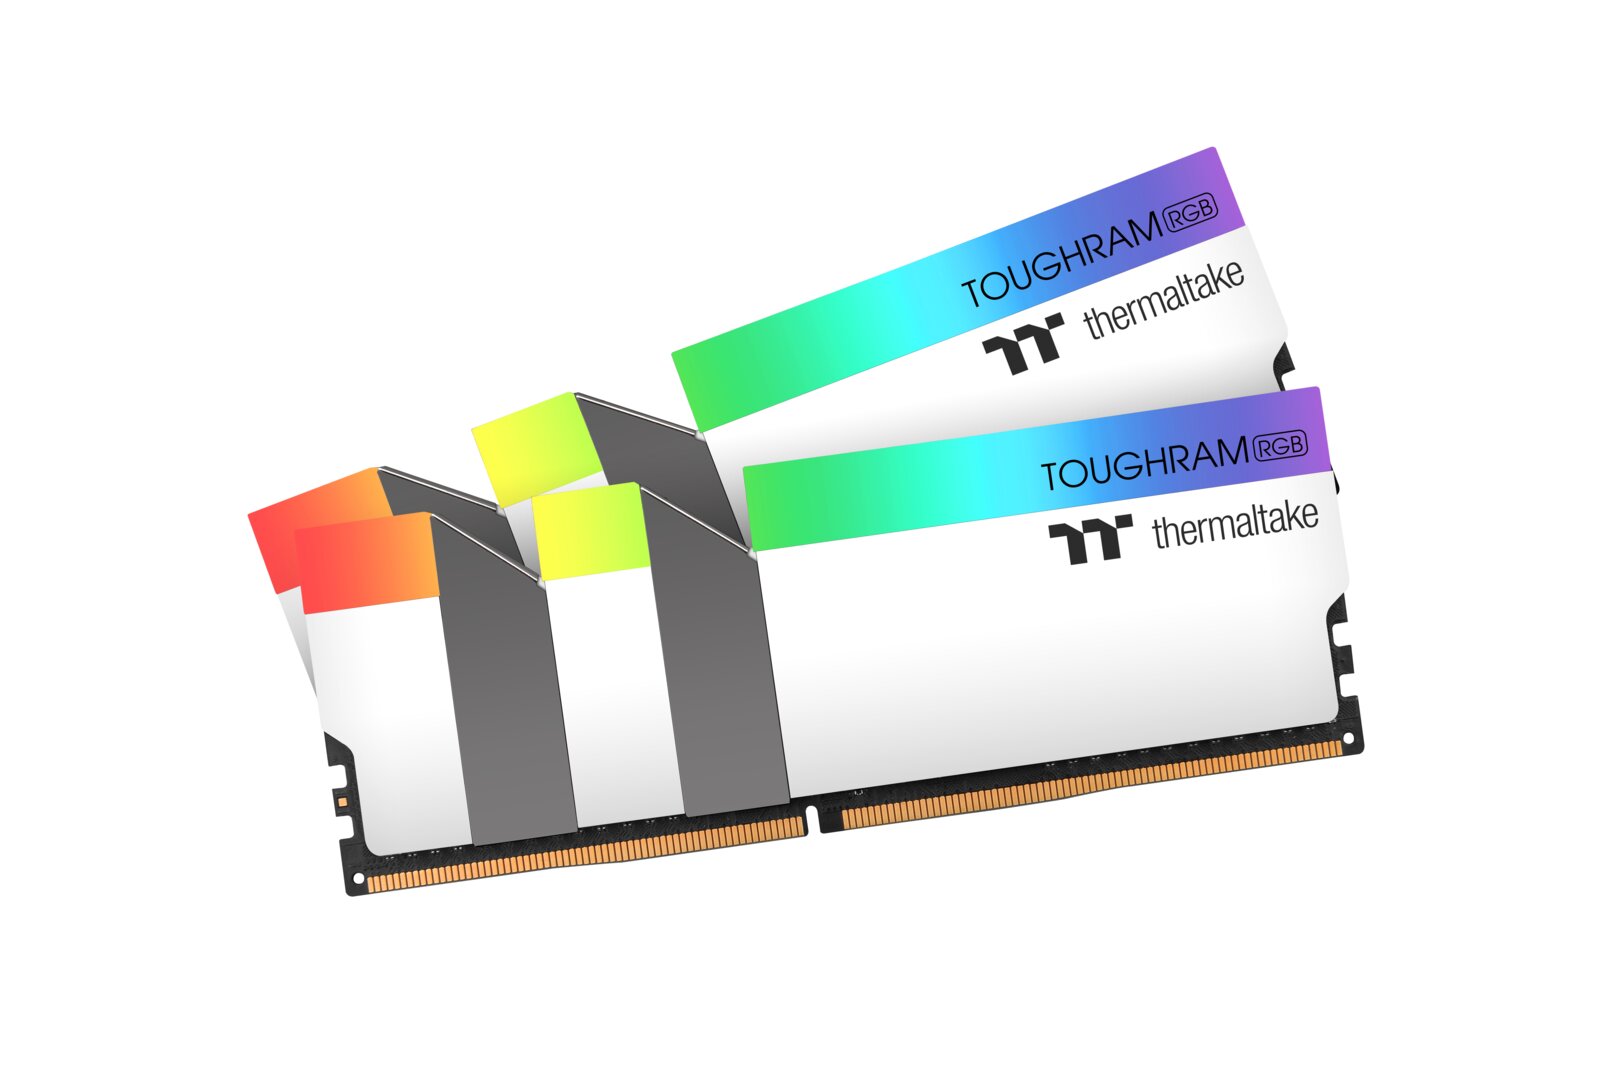 Thermaltake Toughram RGB White Edition